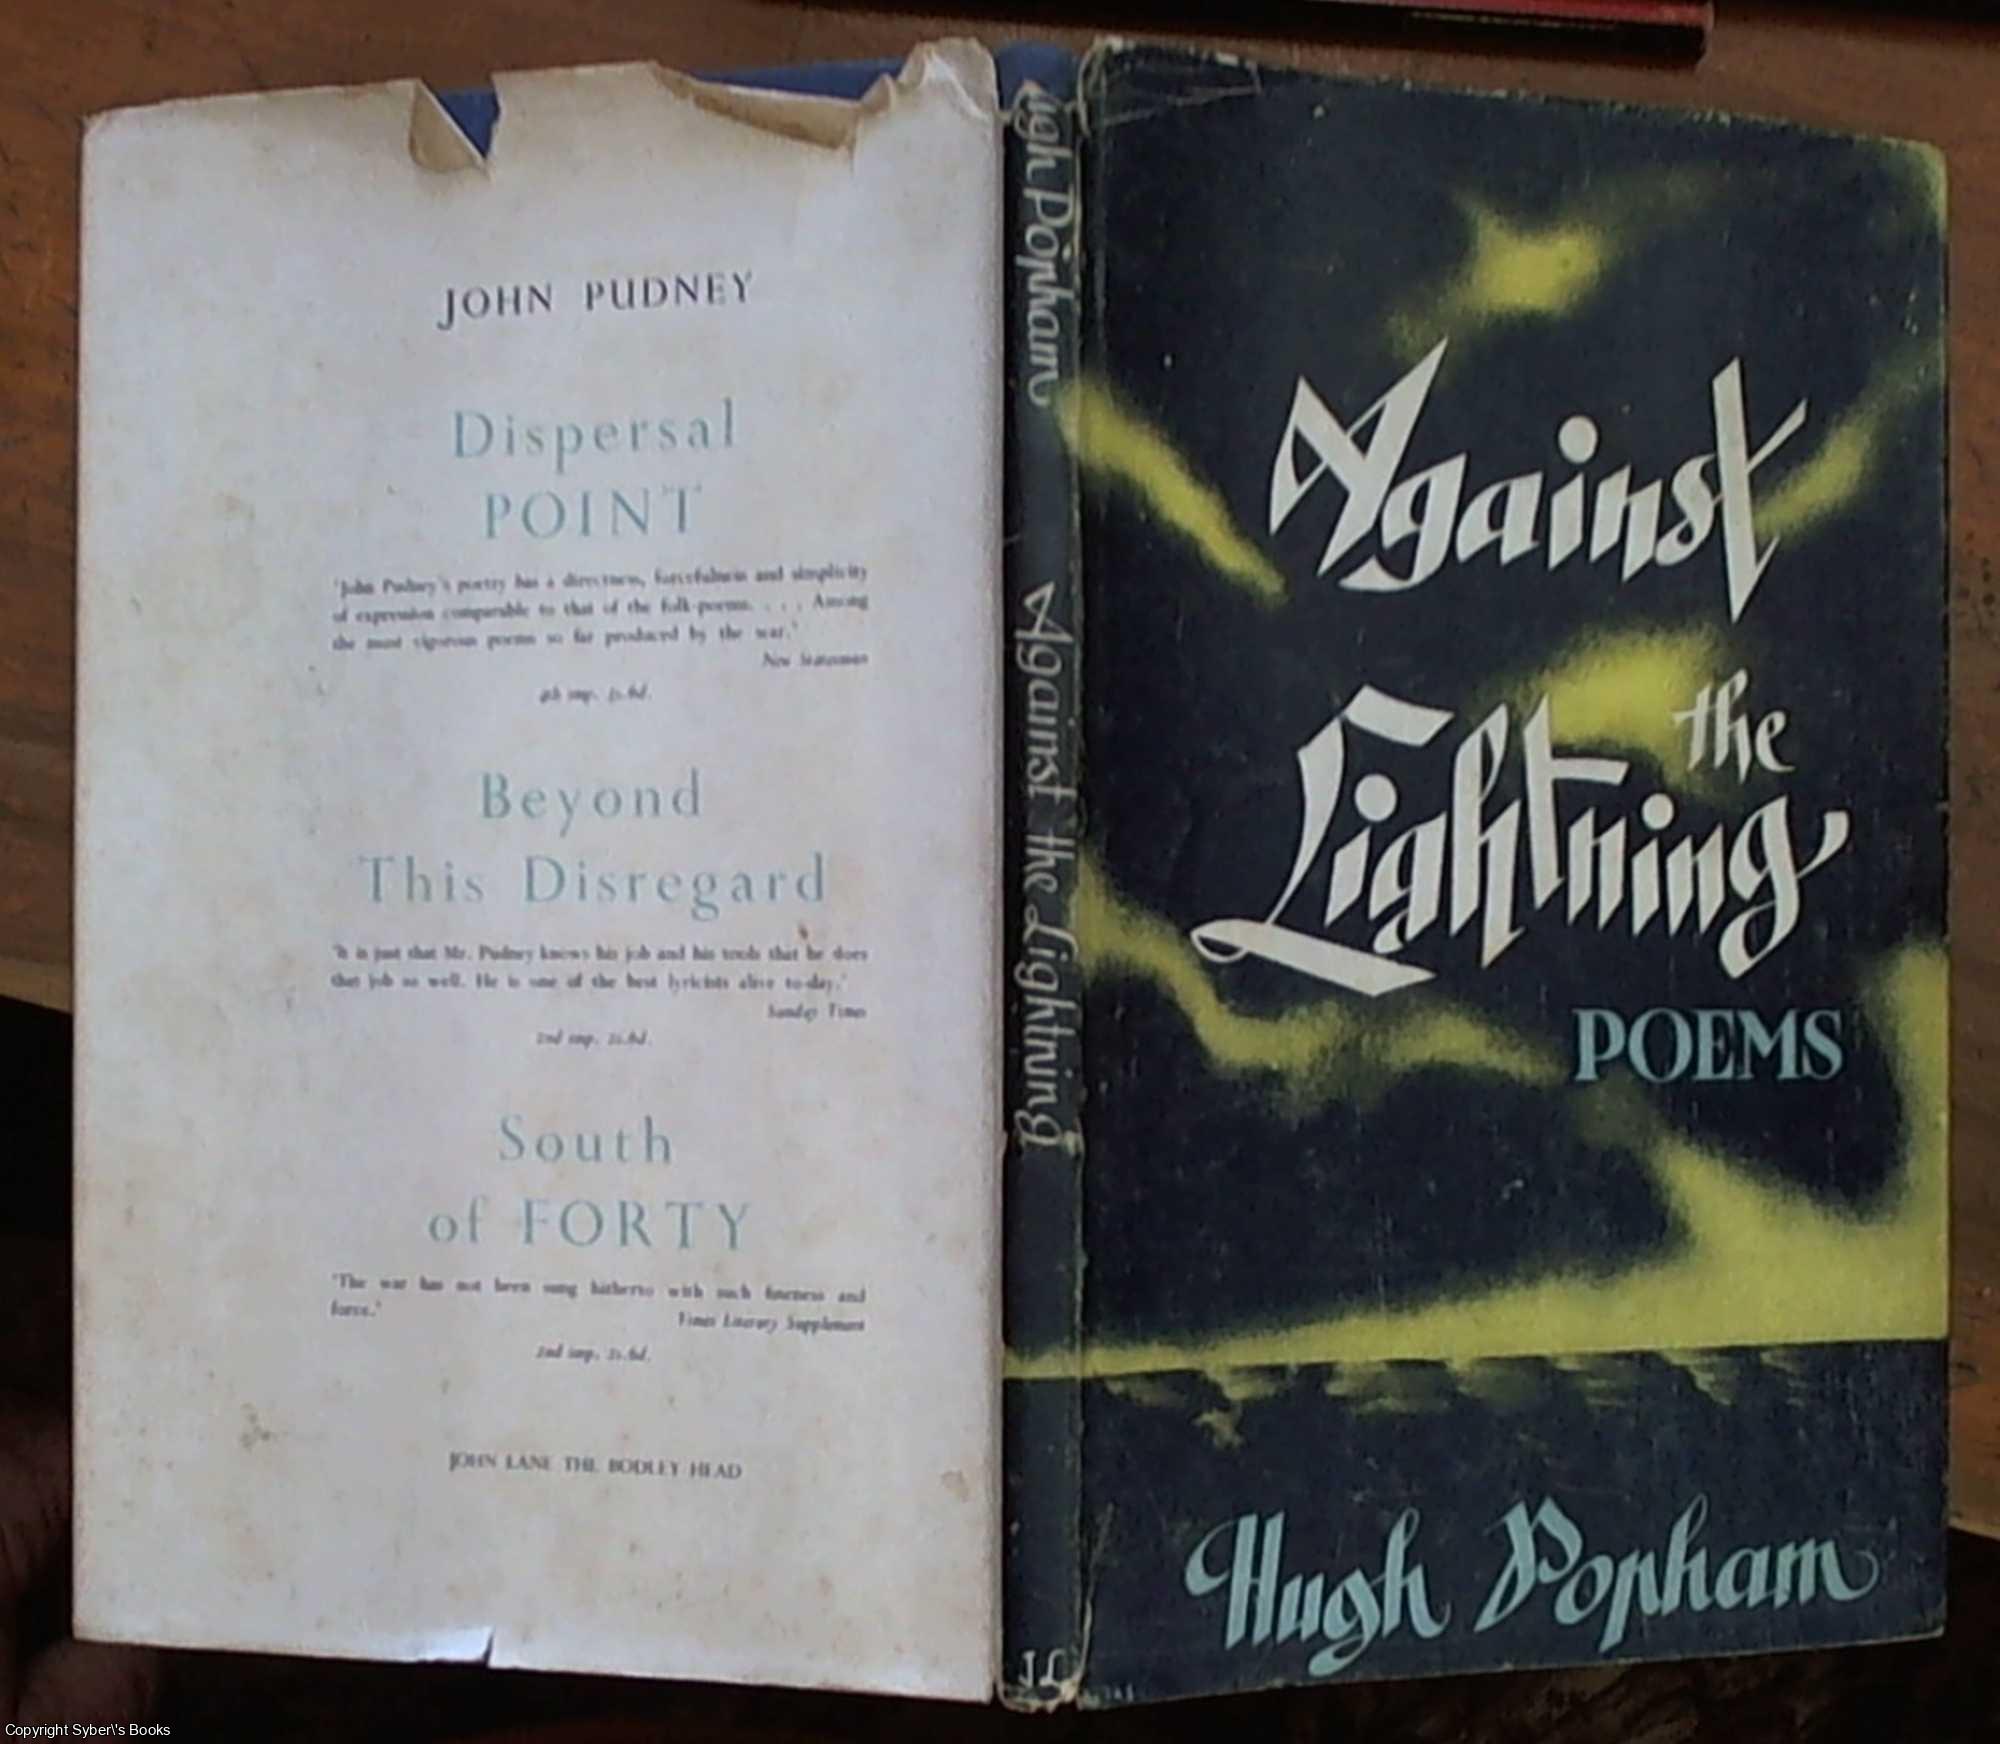 Popham, Hugh - Against the Lightning, Poems